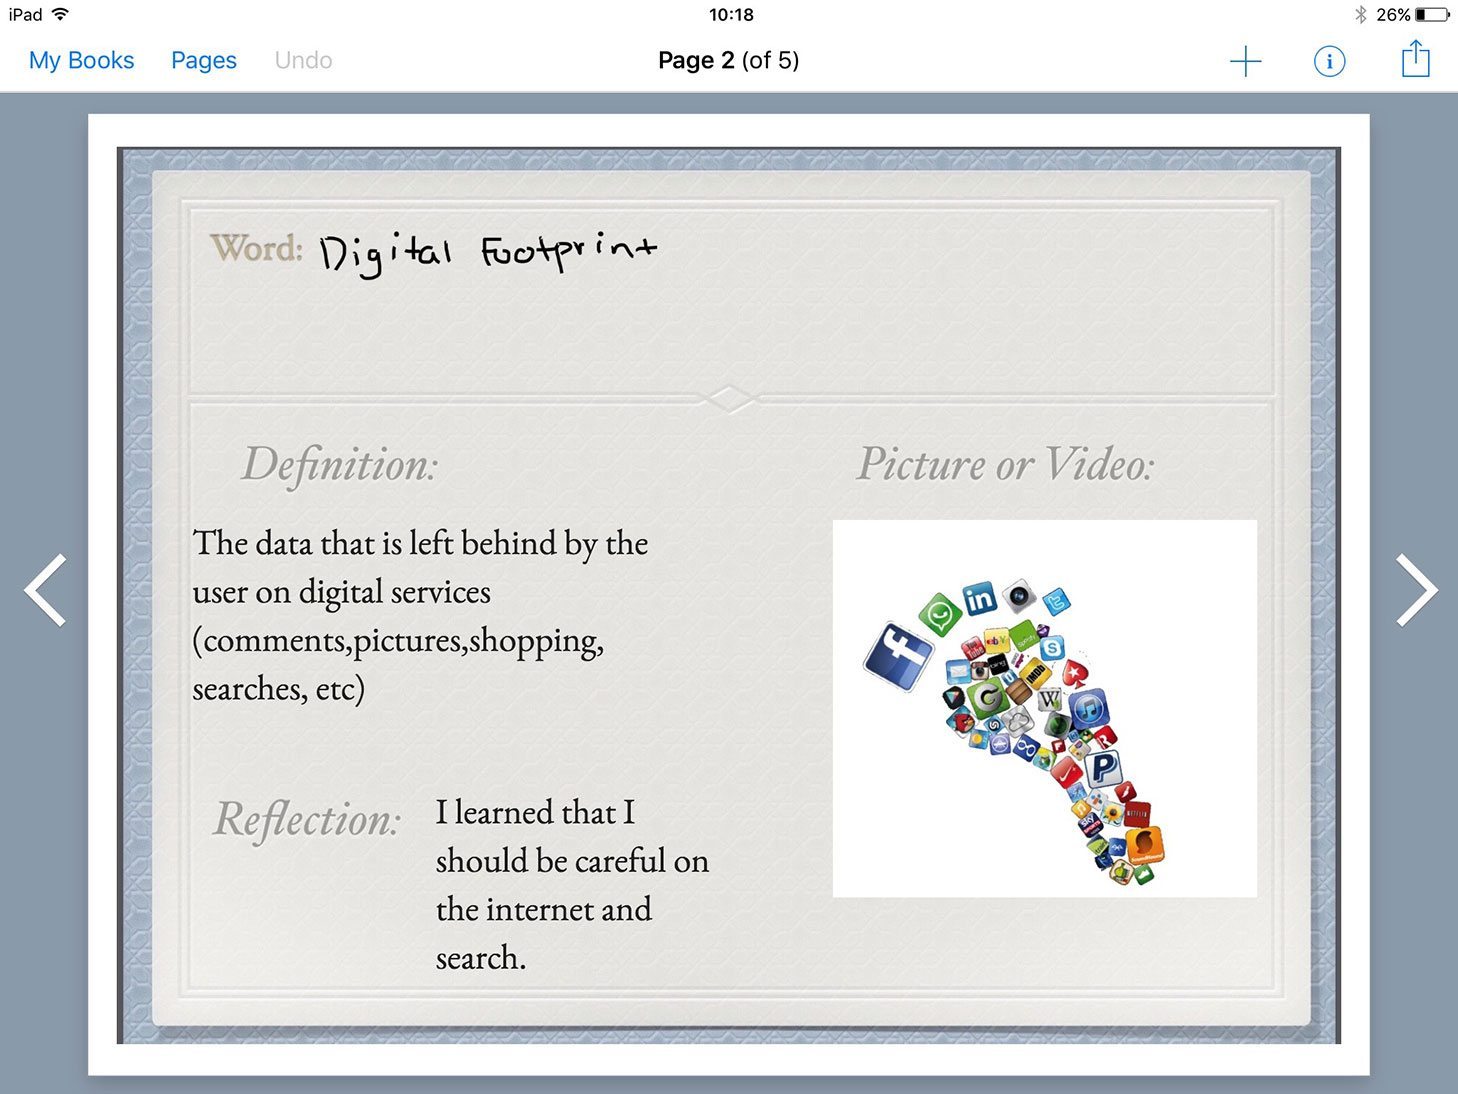 Digital footprint definition